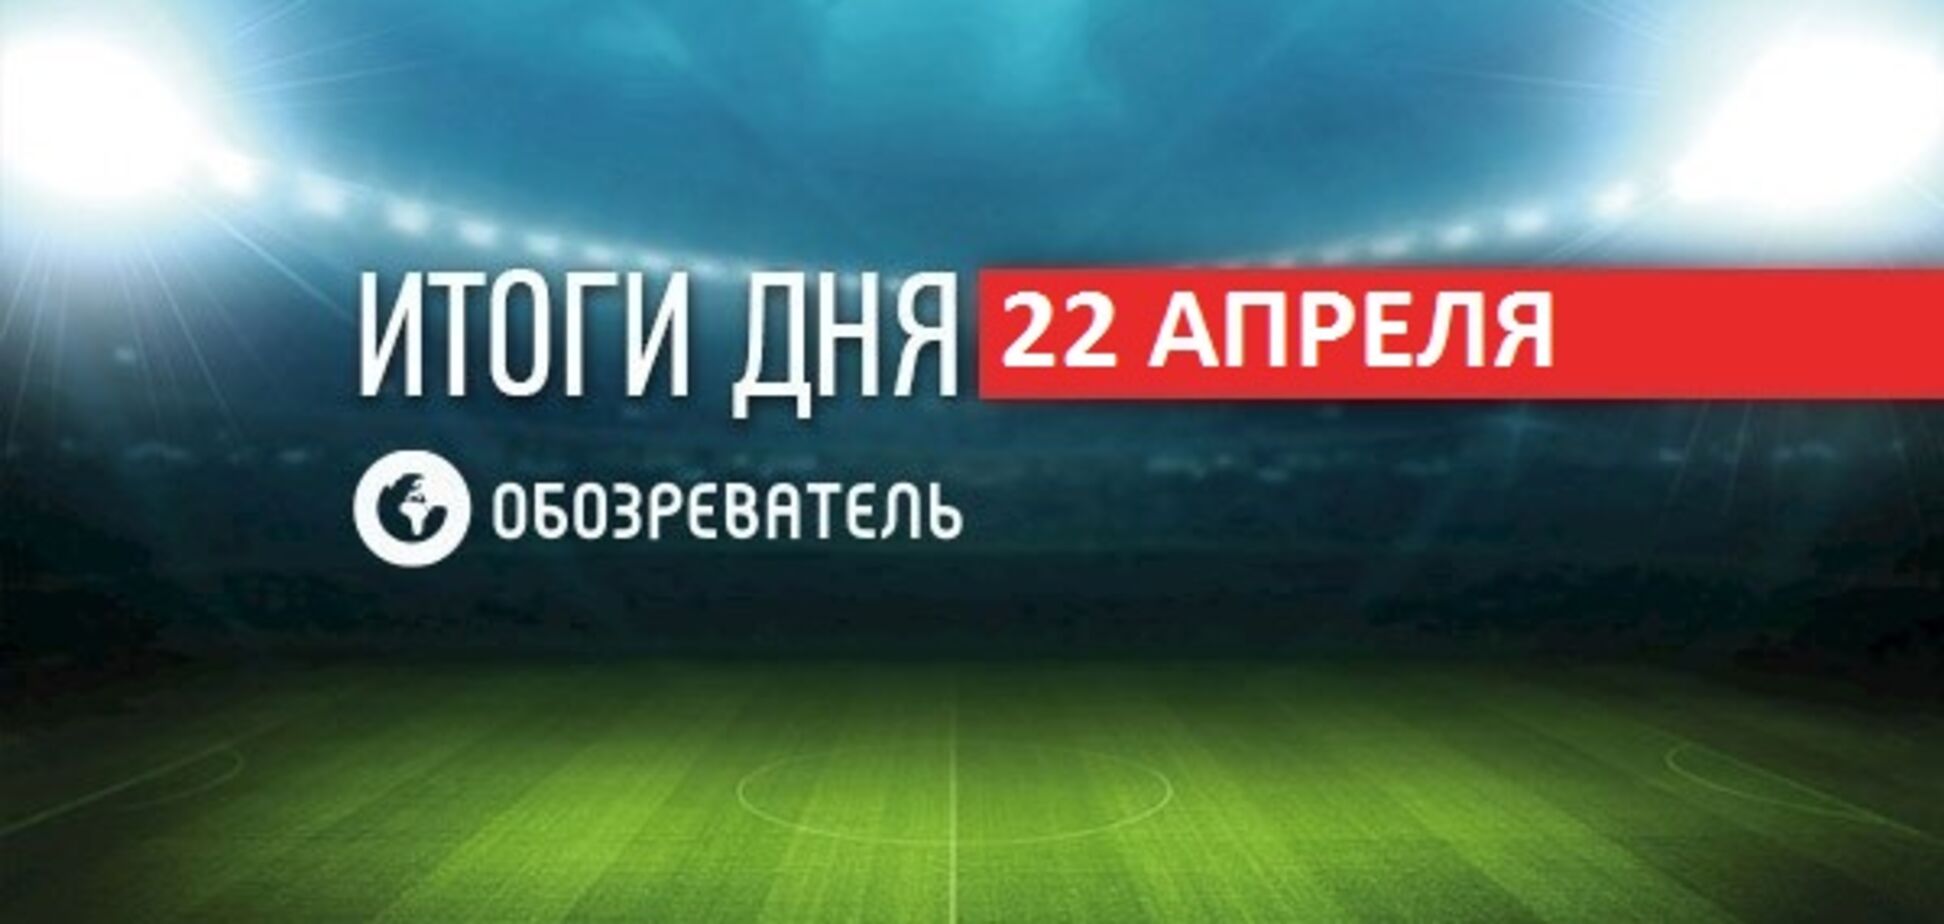 На фаната 'Шахтаря' завели справу через прапор 'Новоросії': спортивні підсумки 22 квітня